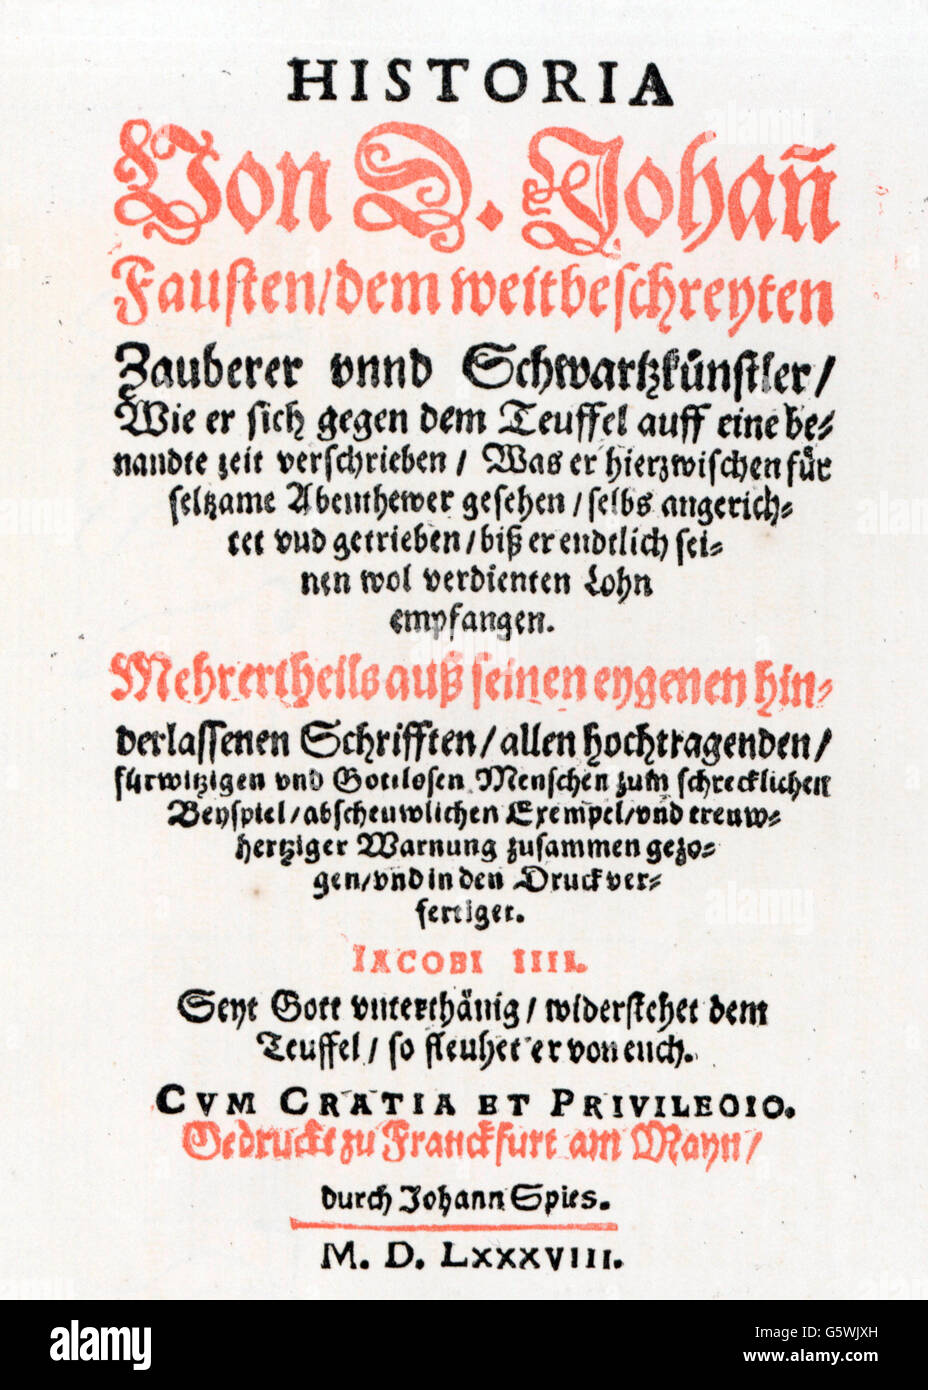 Faust, Johannes, ca. 1480 - ca. 1540, deutscher Zauberer und Astrologe, 'Historia von D. Johann Fausten' (Geschichte von Doktor Johannes Faust), 2. Auflage, Titelseite, Druck: Johann Spies (ca. 1540 - 1623), Frankfurt, 1588, Stockfoto